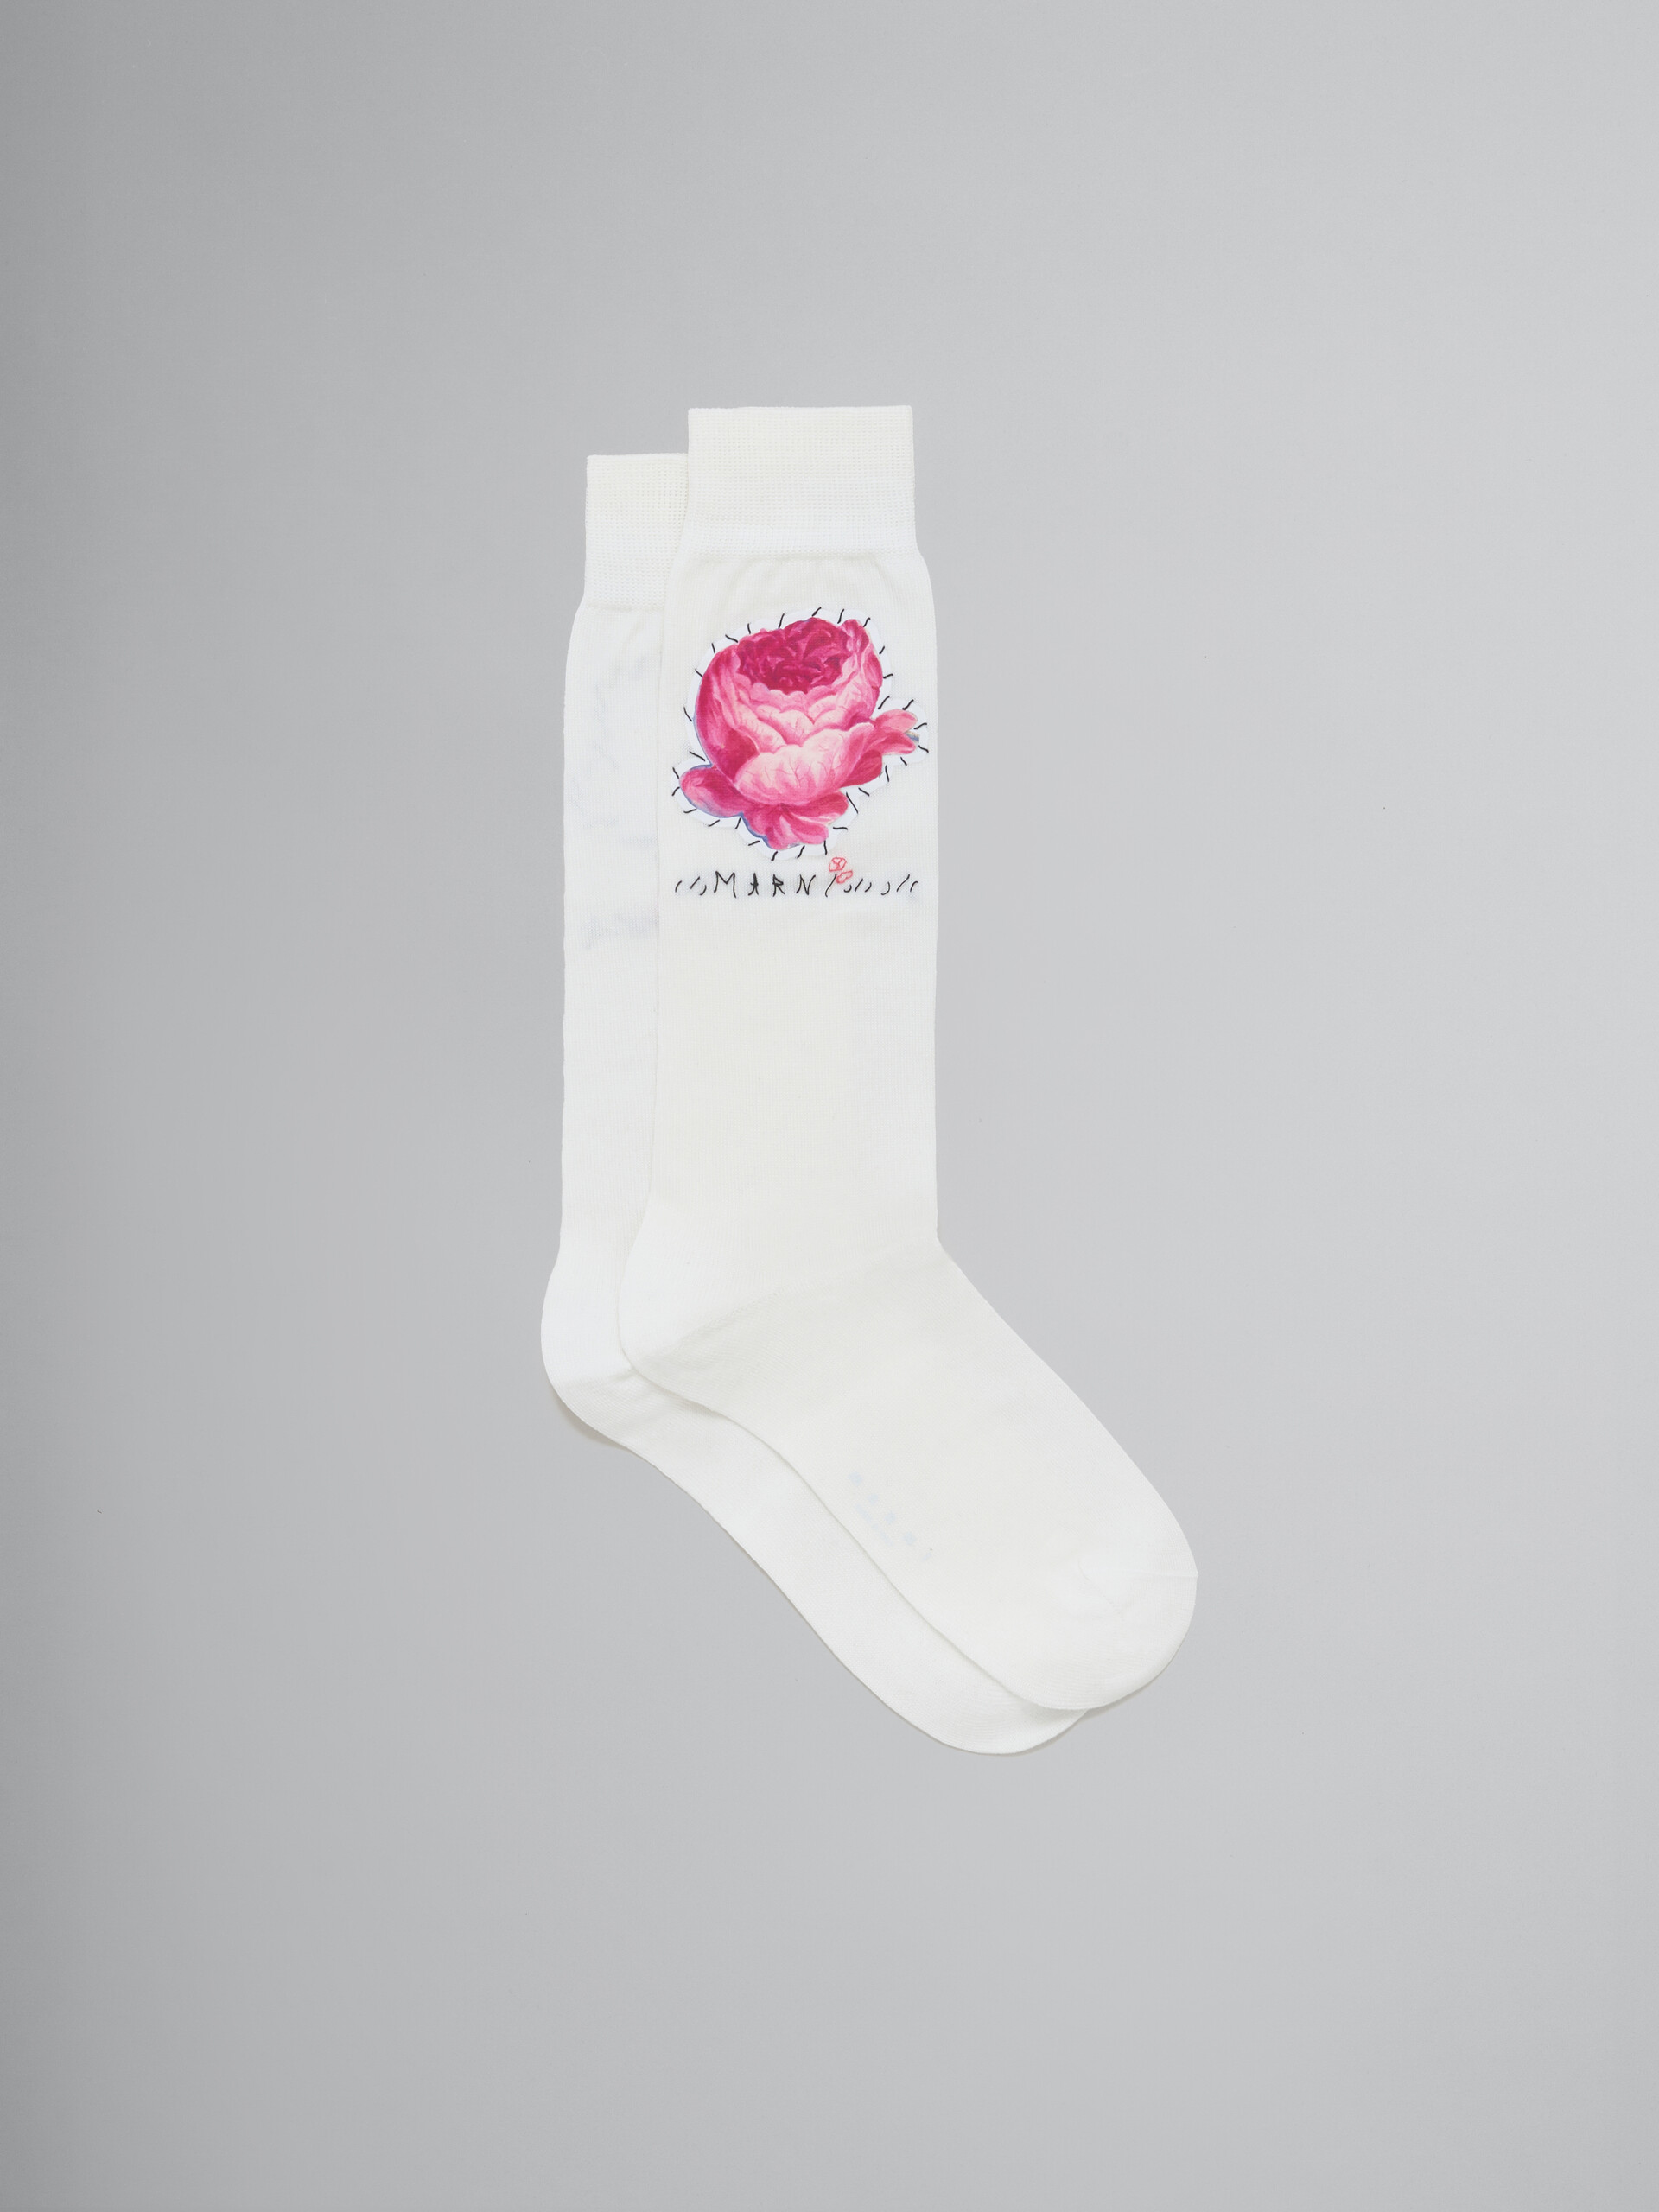 Rosafarbene Socken aus Baumwolle mit Blumen-Aufnähern - Socken - Image 1